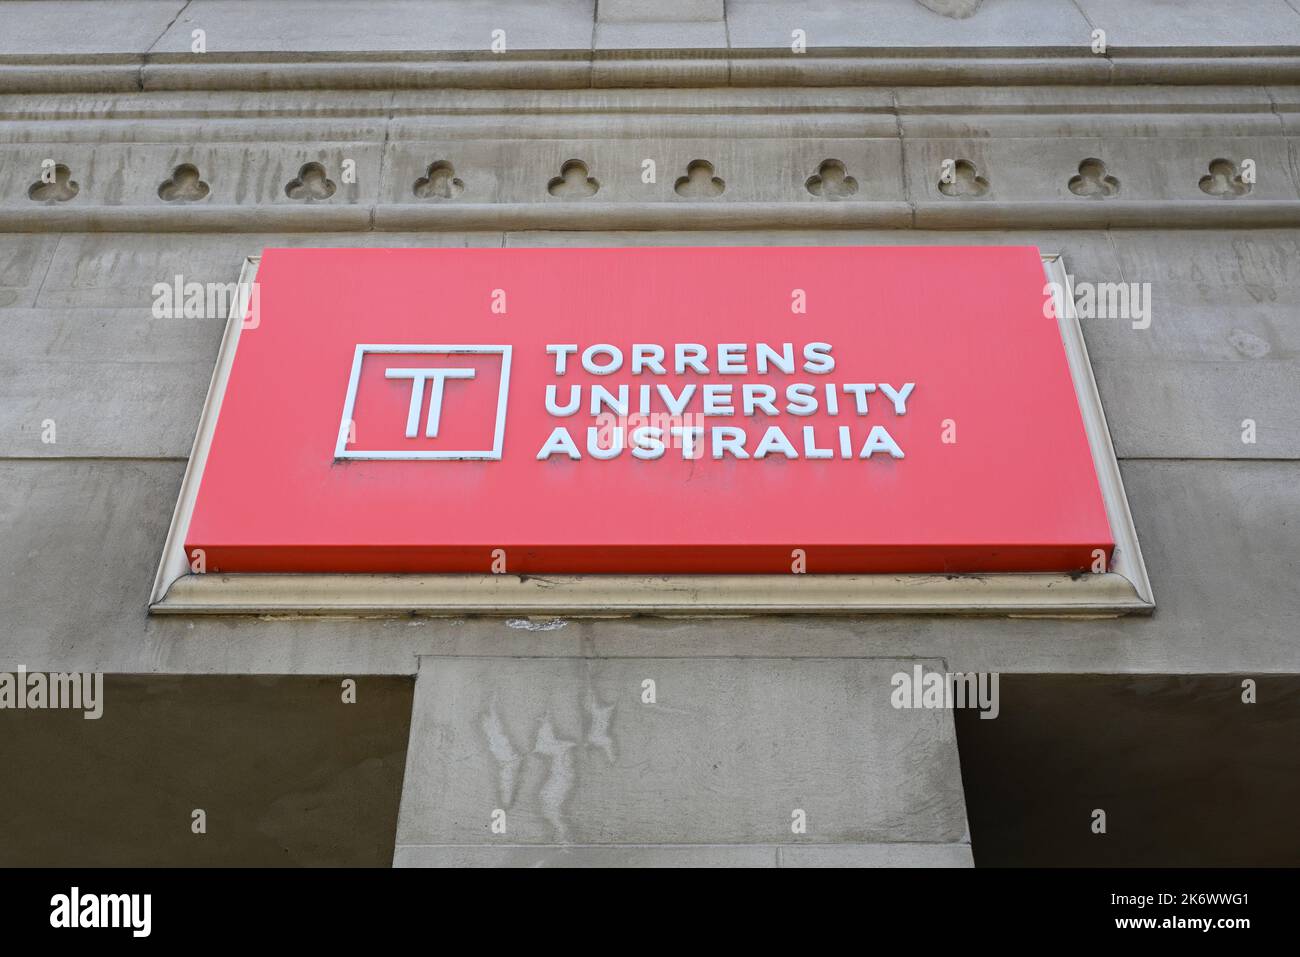 Panneau rouge et blanc de l'Université Torrens, au-dessus de l'entrée de son campus de Flinders St, avec logo et inscriptions recouverts de toiles d'araignée Banque D'Images